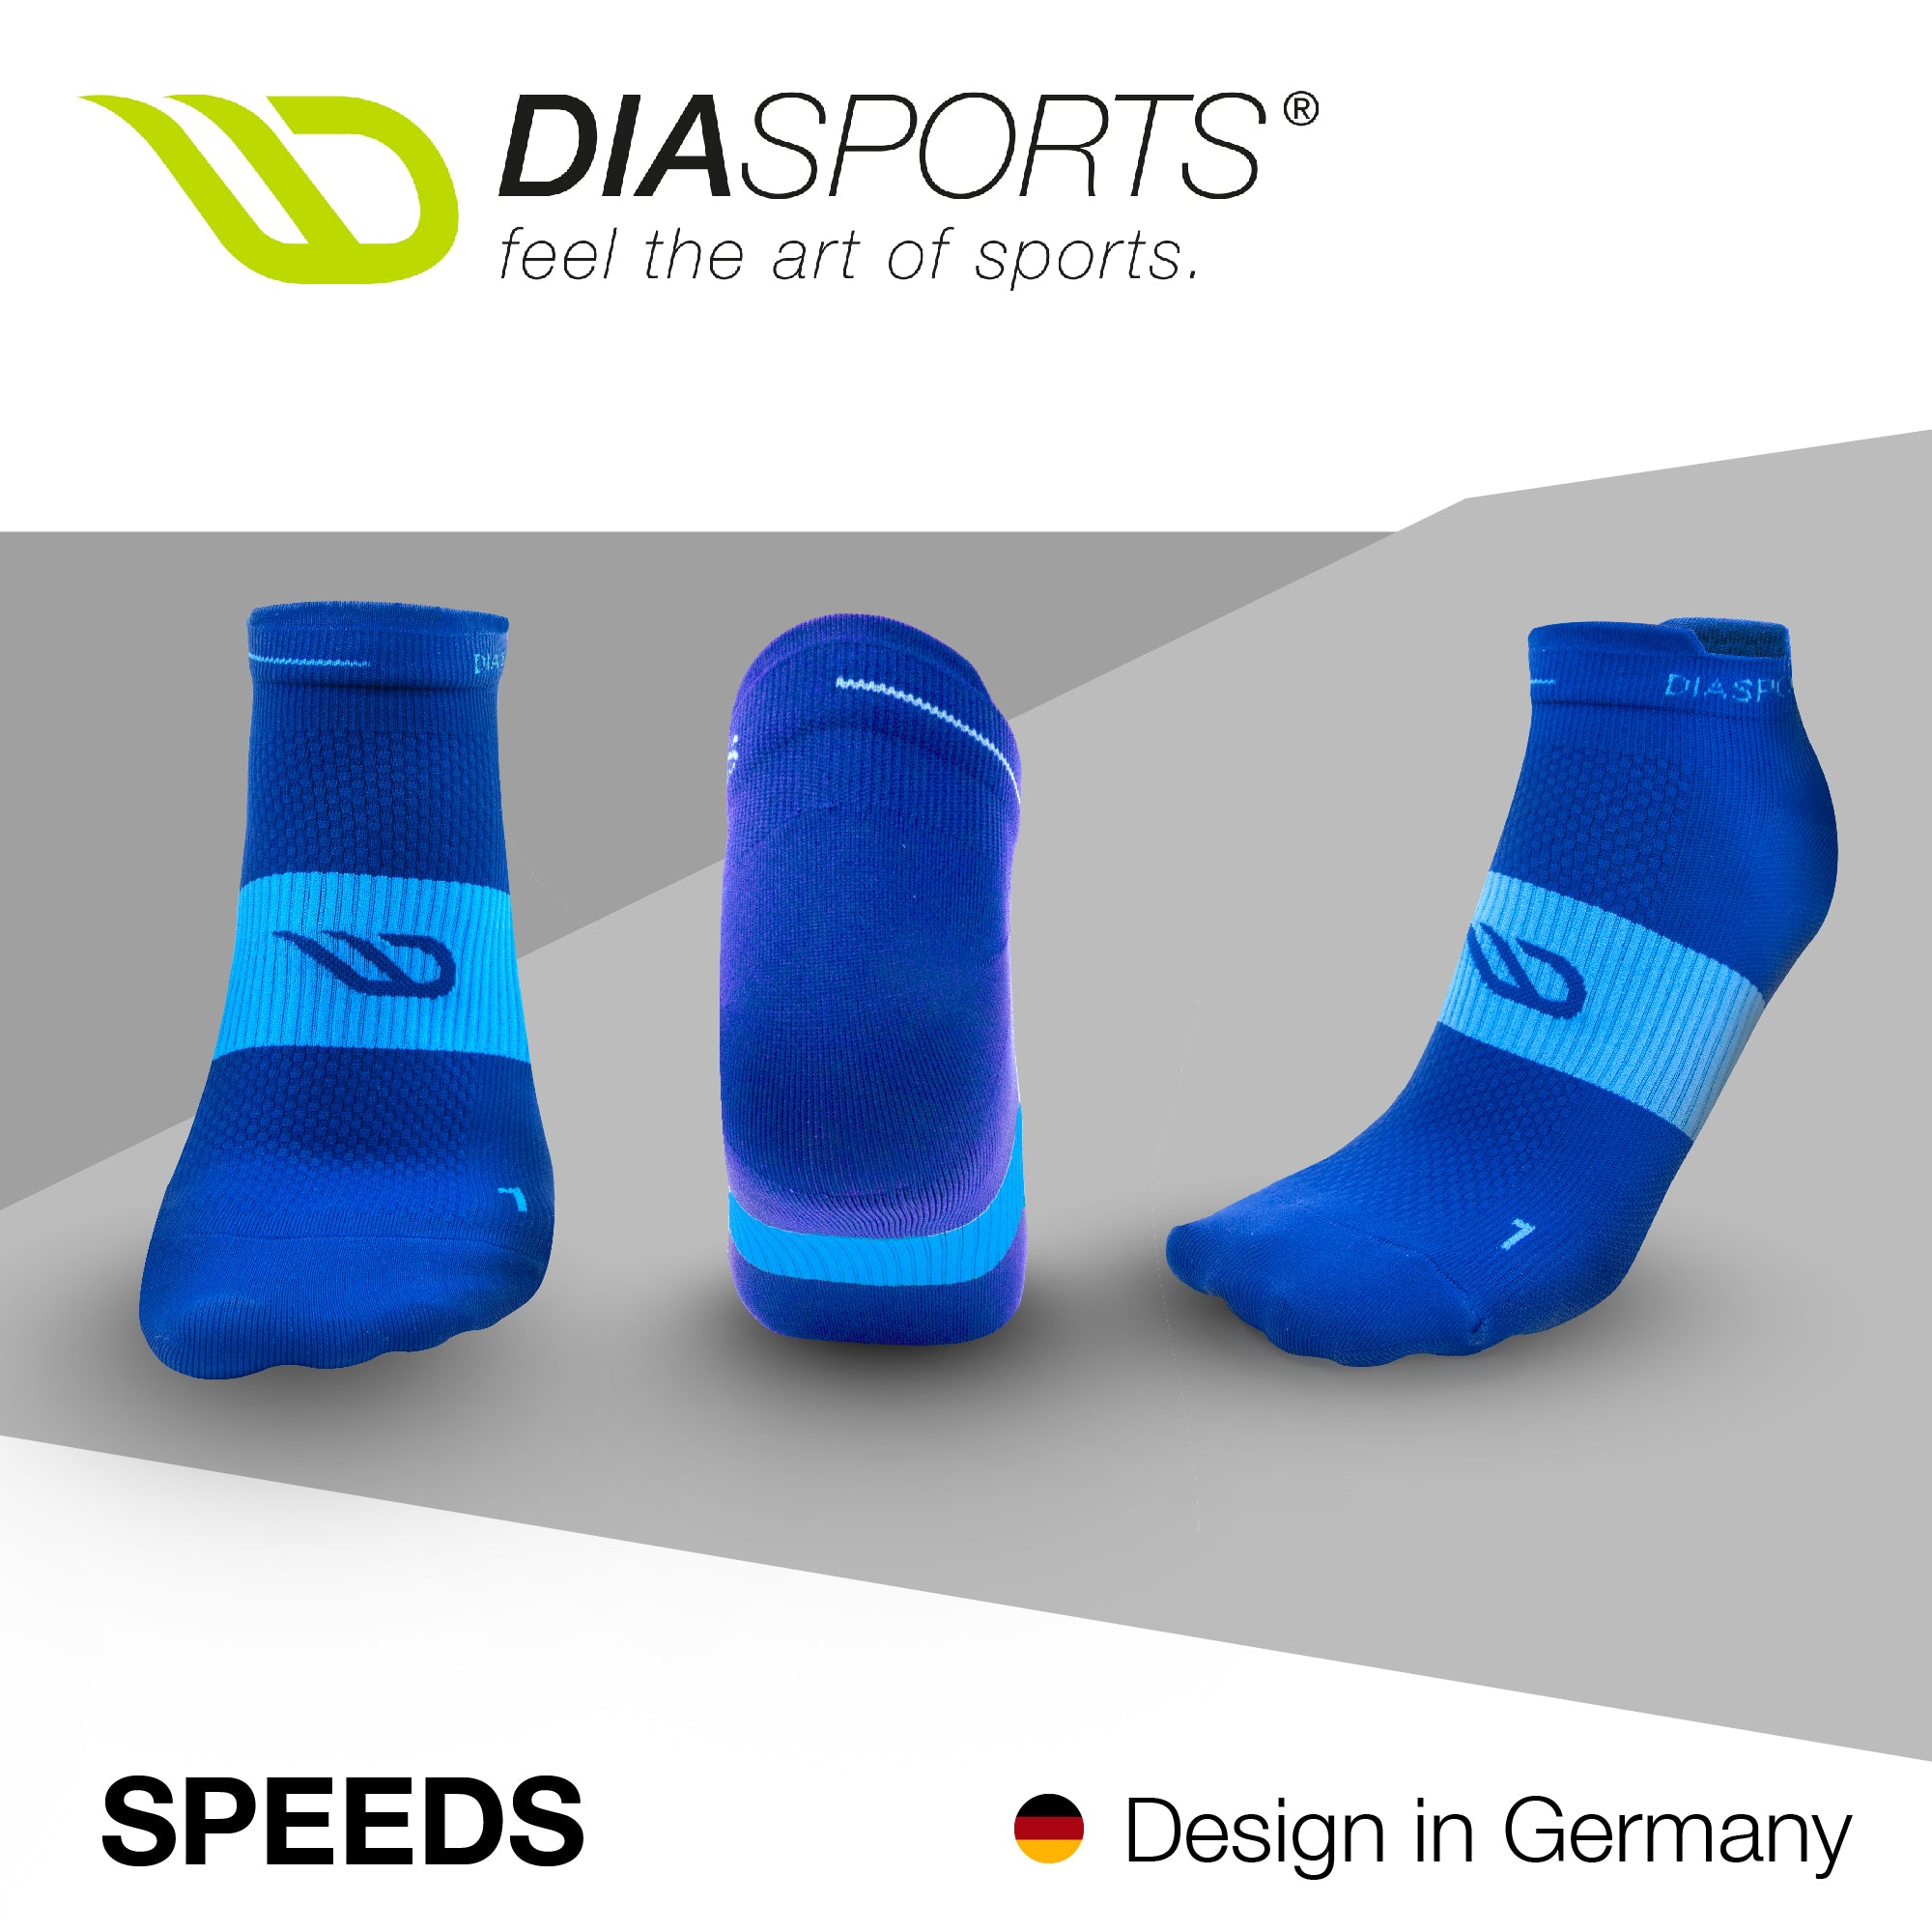 eFly_DiaSports_Produktbilder_Speeds_blau_2.jpg